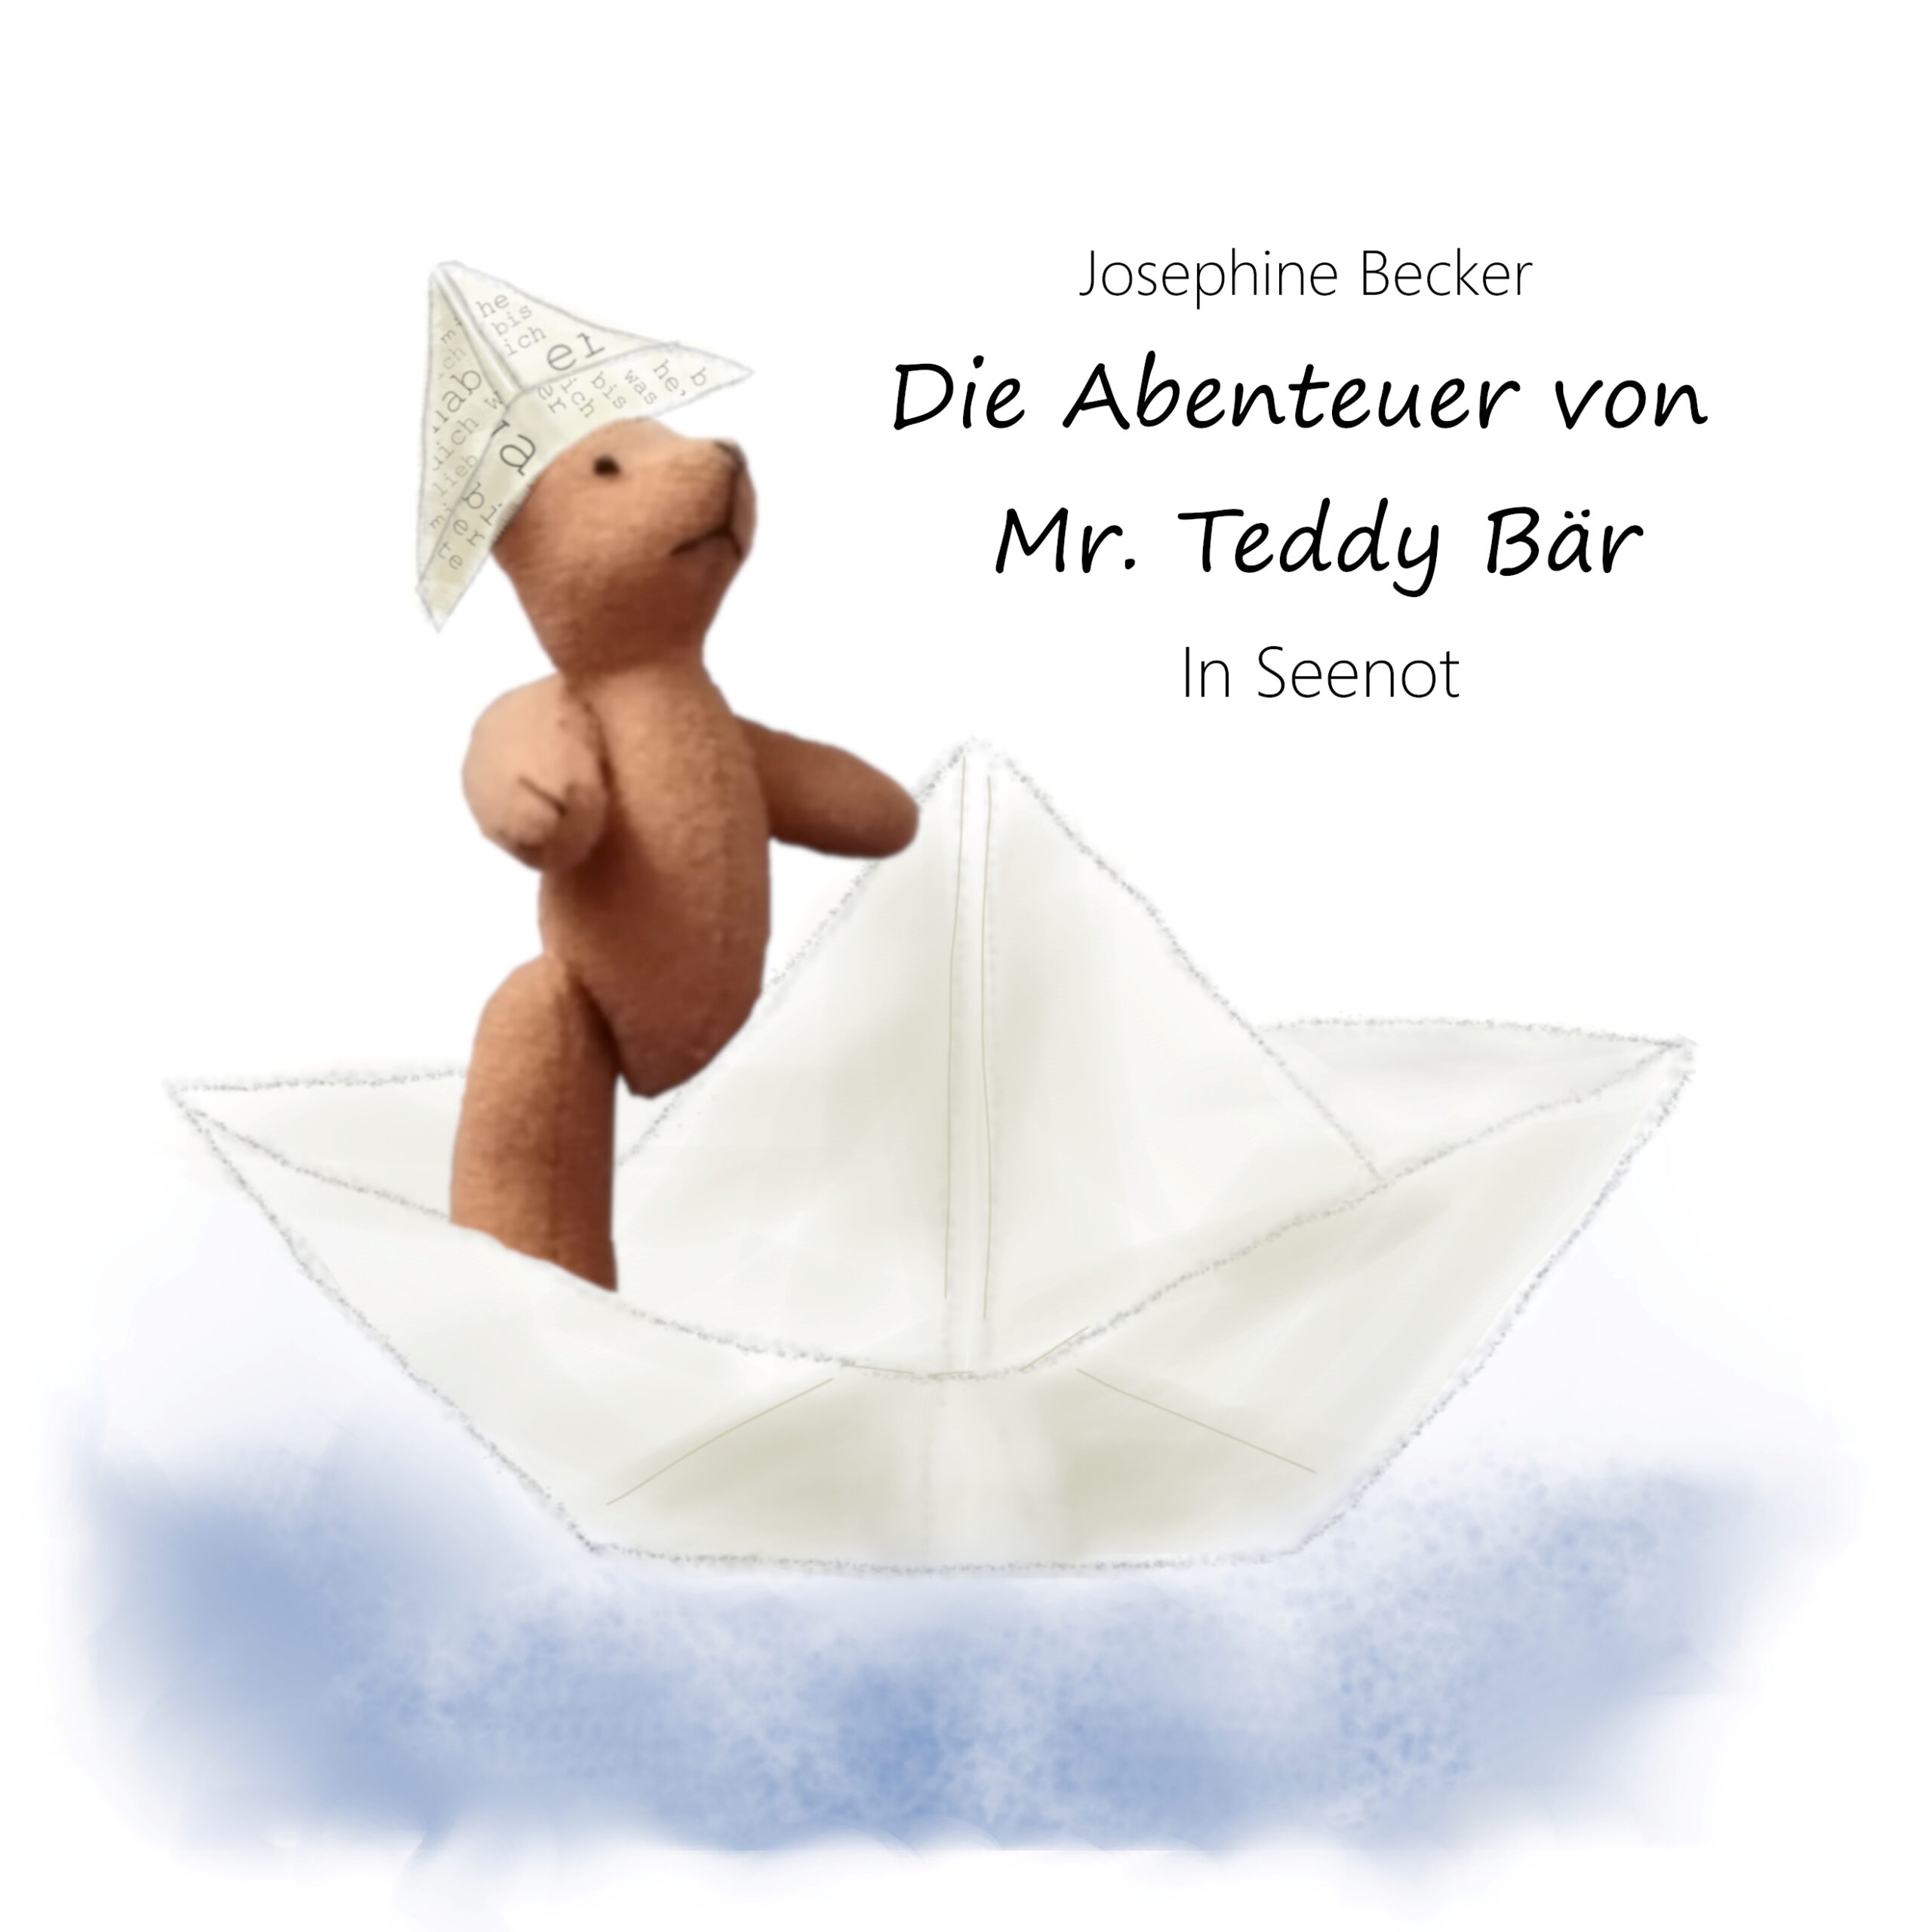 Die Abenteuer von Mr. Teddy Bär